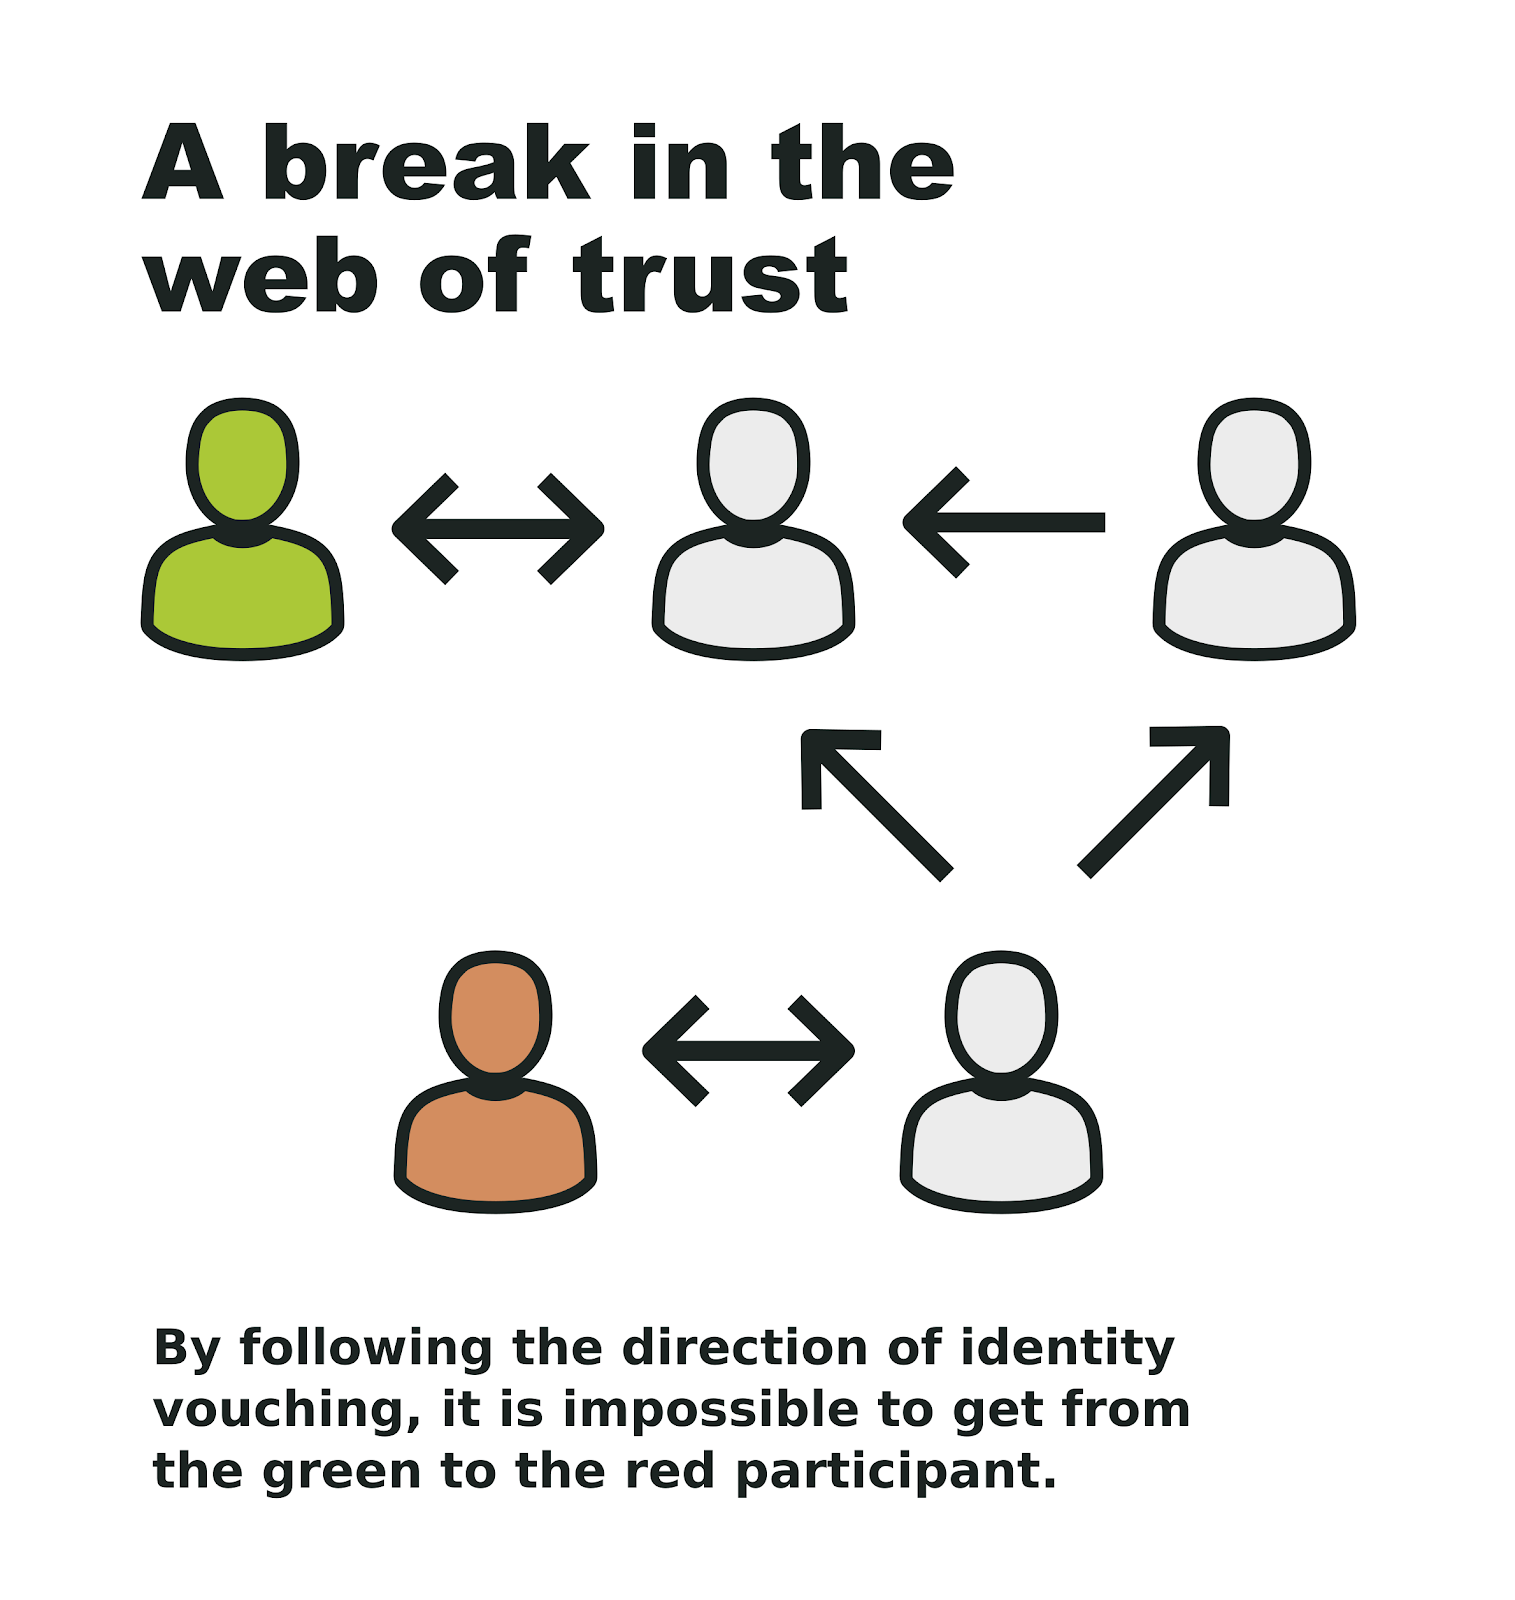 A break in the web of trust